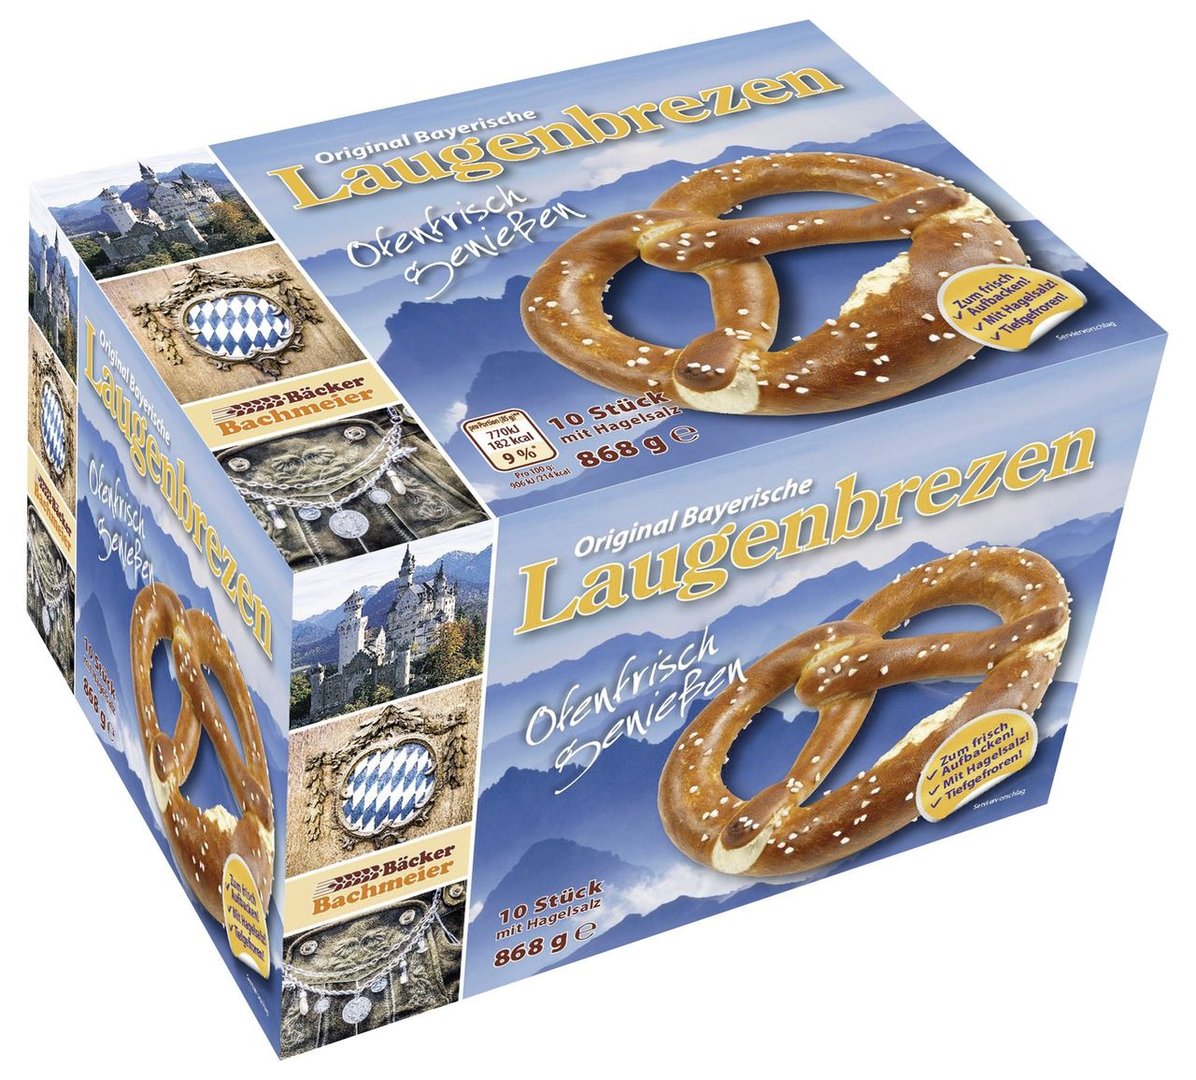 Bäcker Bachmeier - Laugenbrezen Teiglinge, tiefgefroren 10 Stück à 85 g & 18 g Hagelsalz - 868 g Schachtel